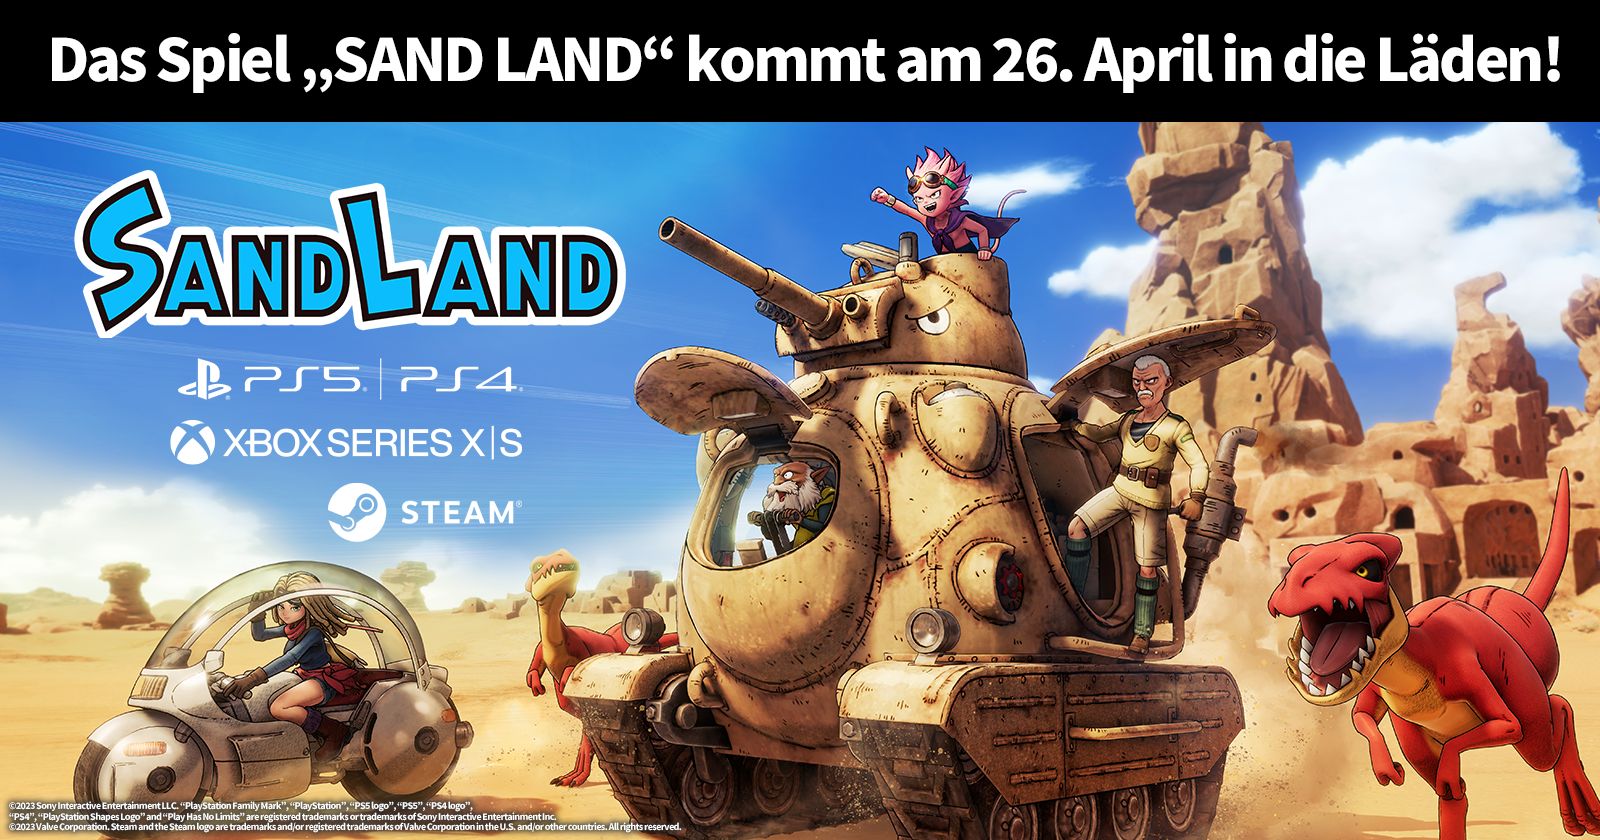 Endlich erscheint das SAND LAND Spiel am Freitag, den 26. April!